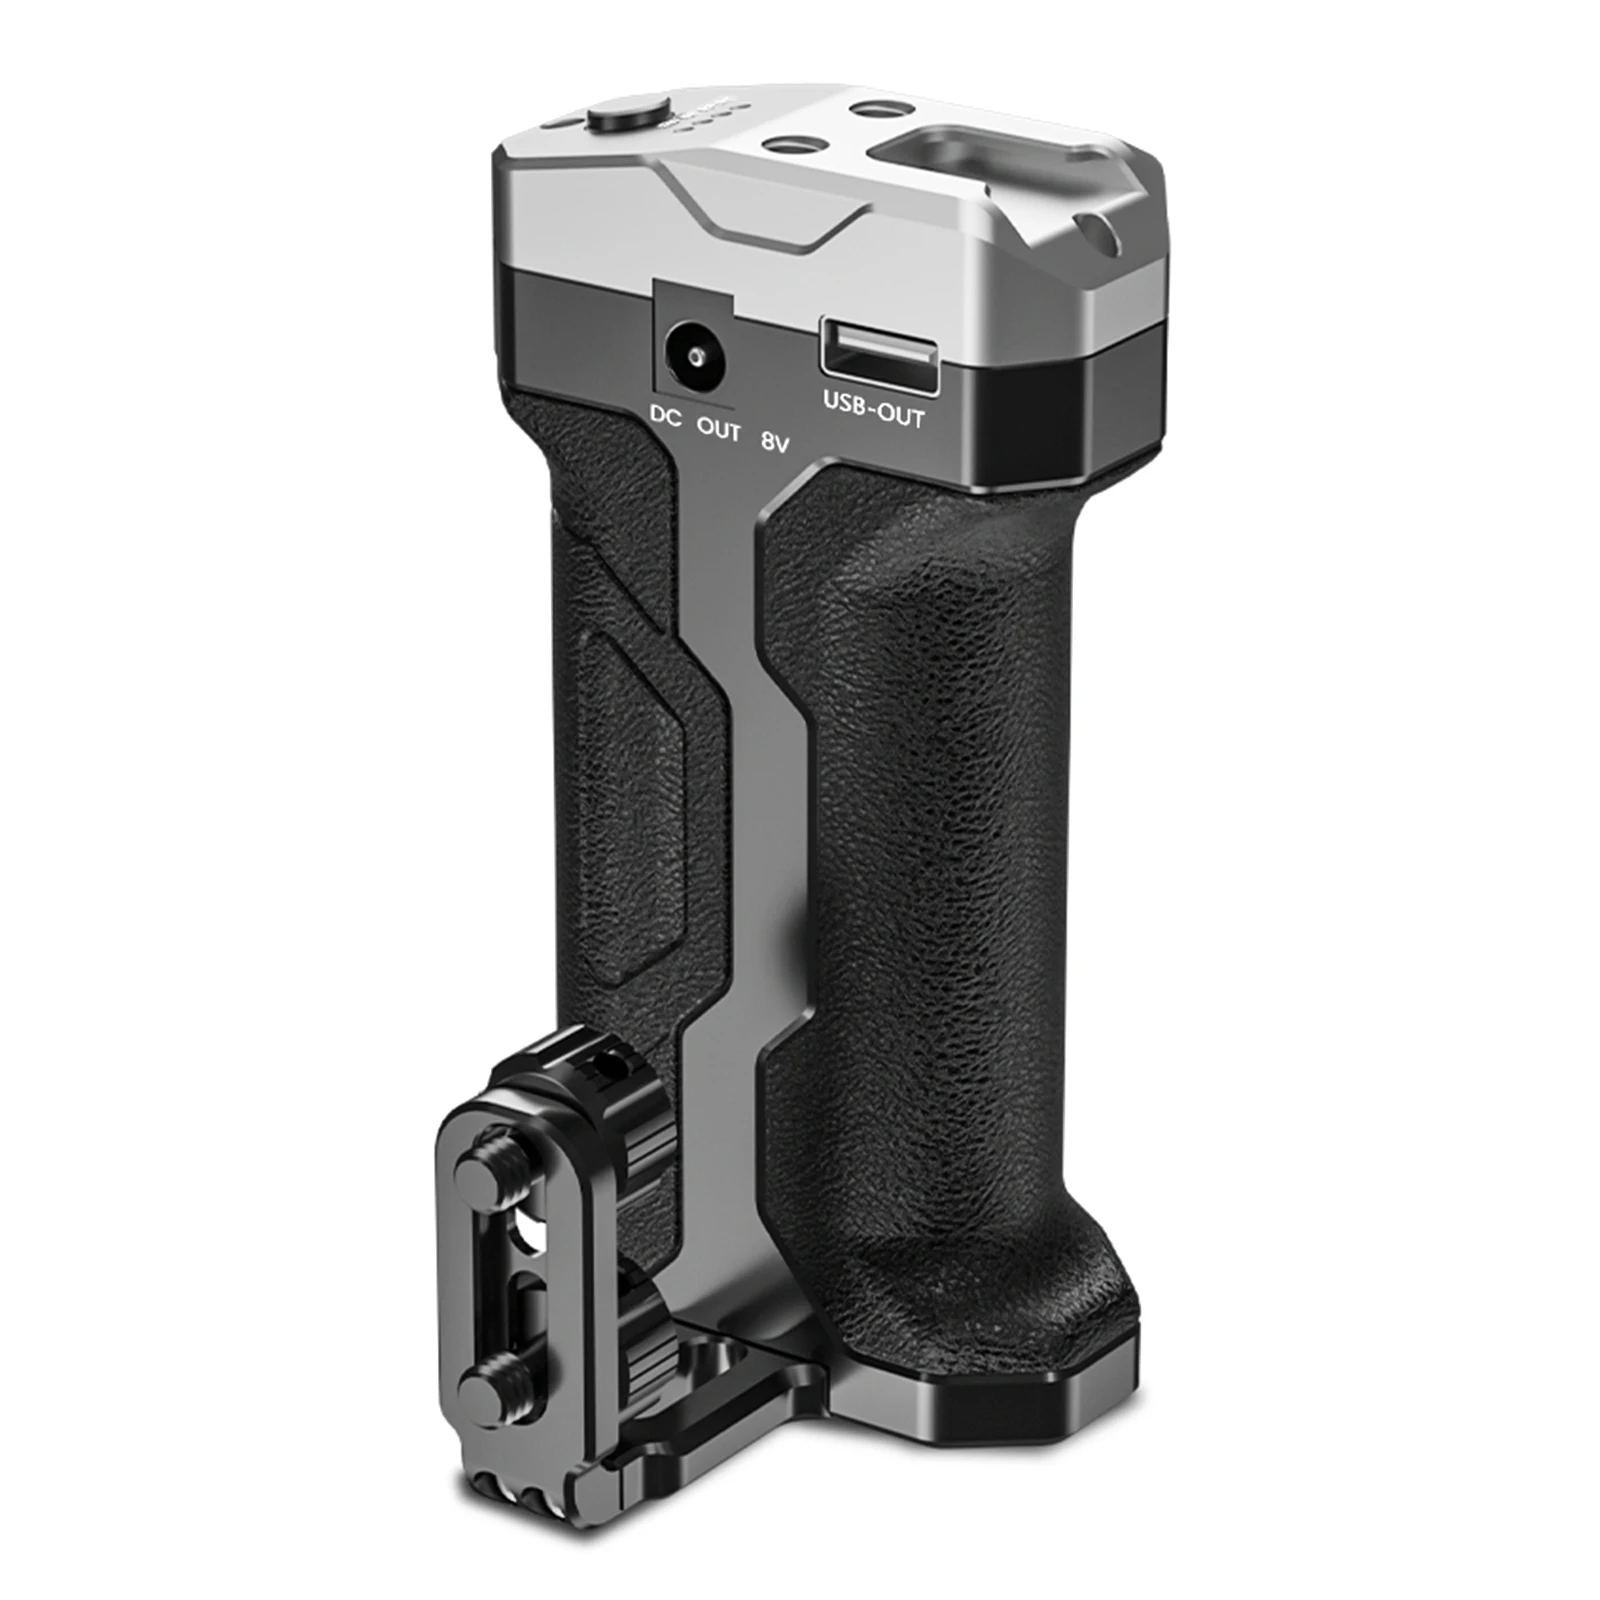 

Andycine Universal рукоятка аккумулятора для камеры с внешним аккумулятором DC и фотовыходом